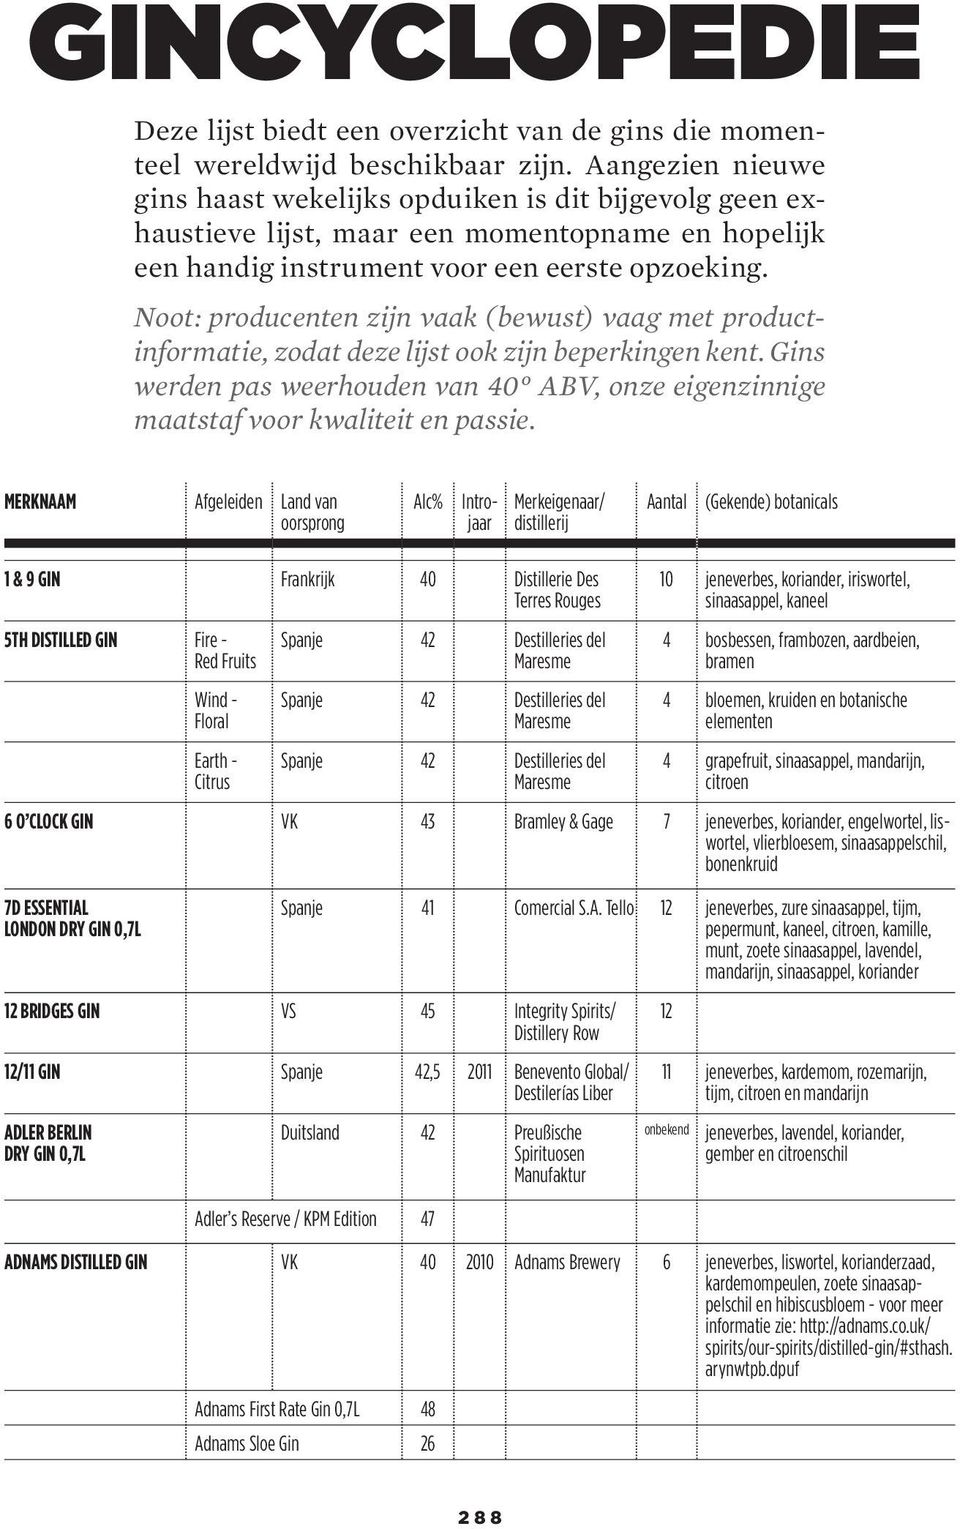 Noot: producenten zijn vaak (bewust) vaag met productinformatie, zodat deze lijst ook zijn beperkingen kent. Gins werden pas weerhouden van 40 ABV, onze eigenzinnige maatstaf voor kwaliteit en passie.